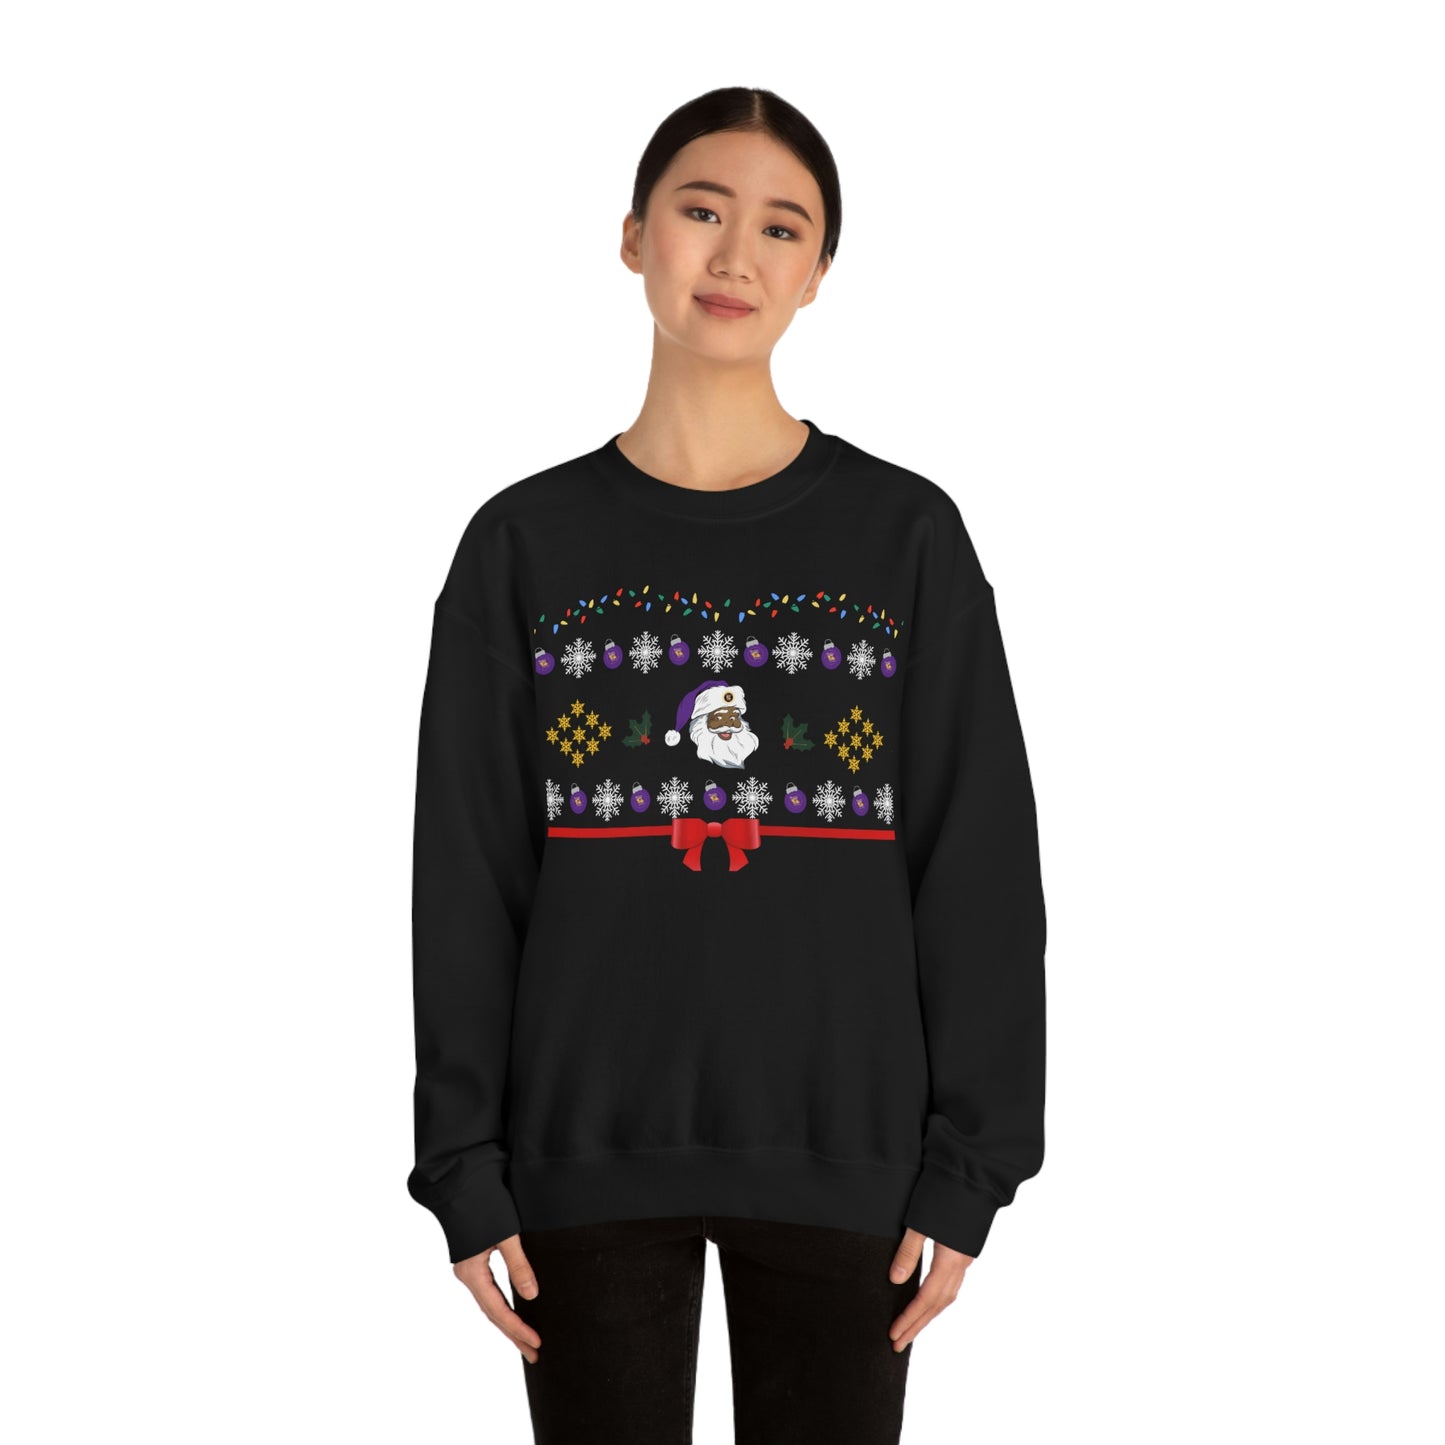 "Ugly Christmas" Sweatshirt